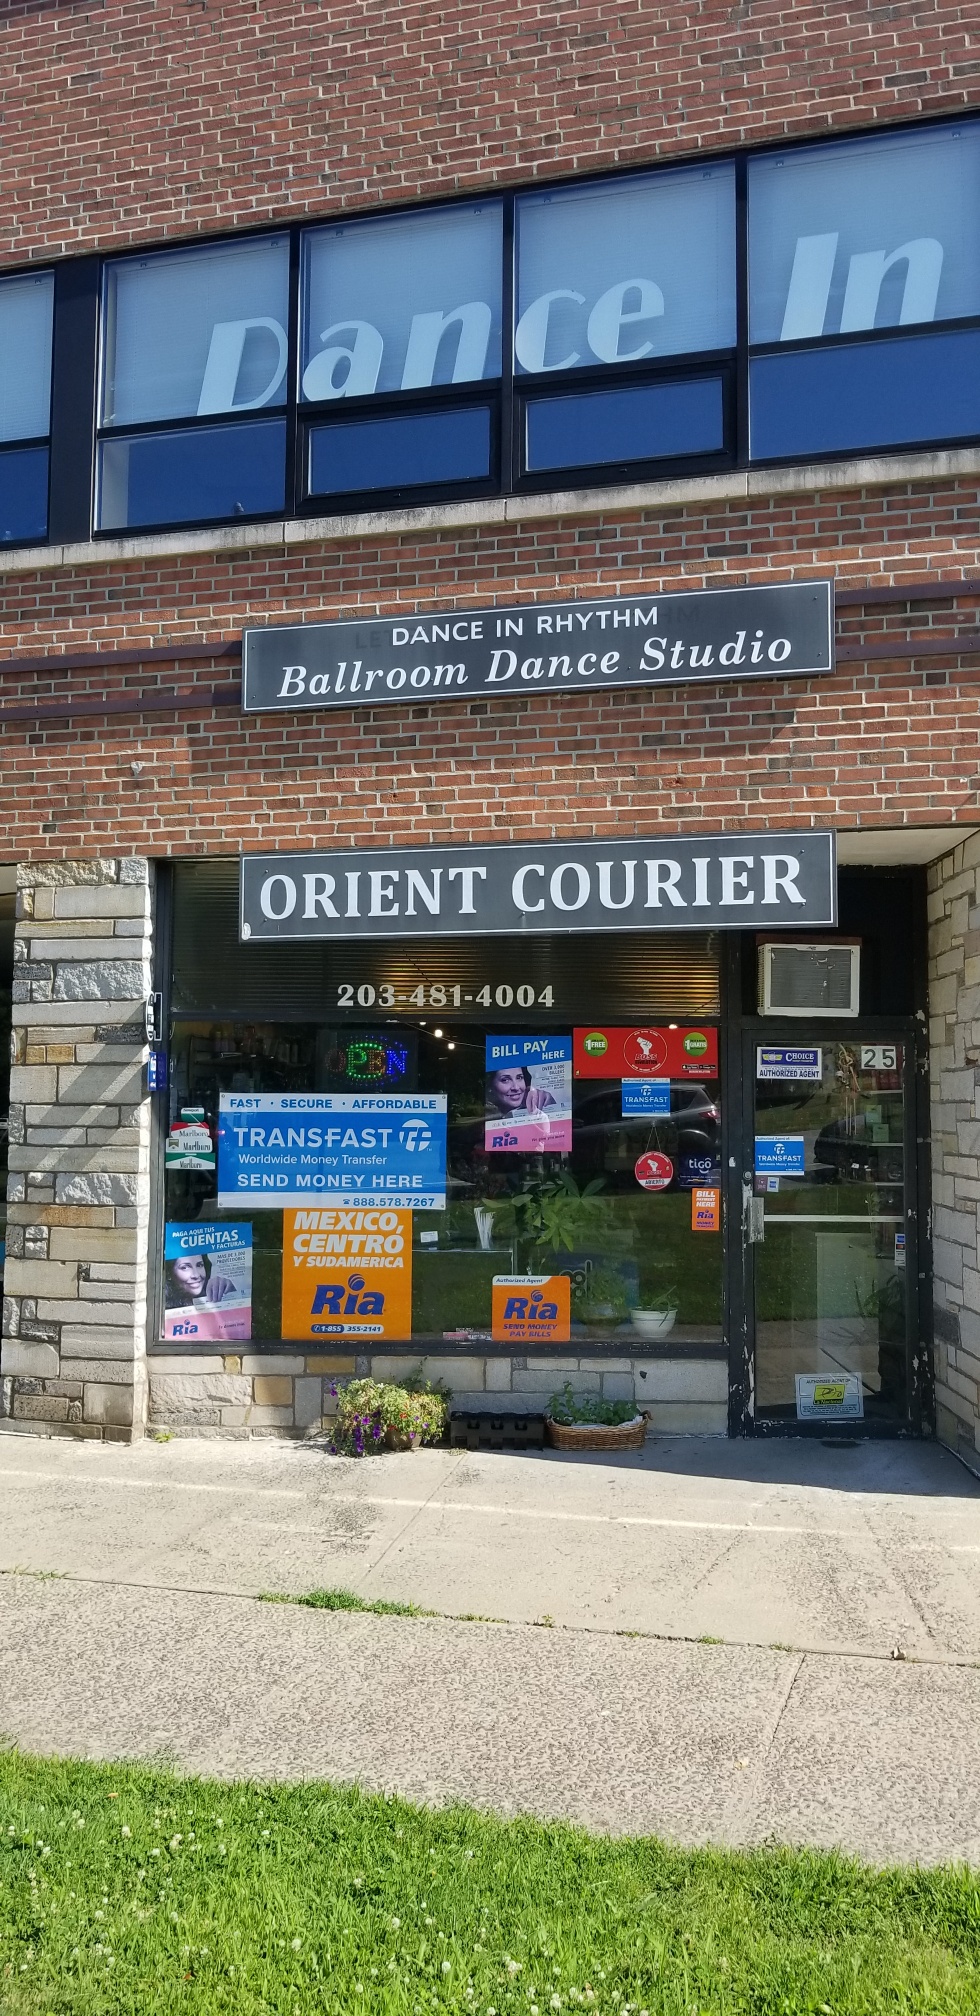 Orient Courier